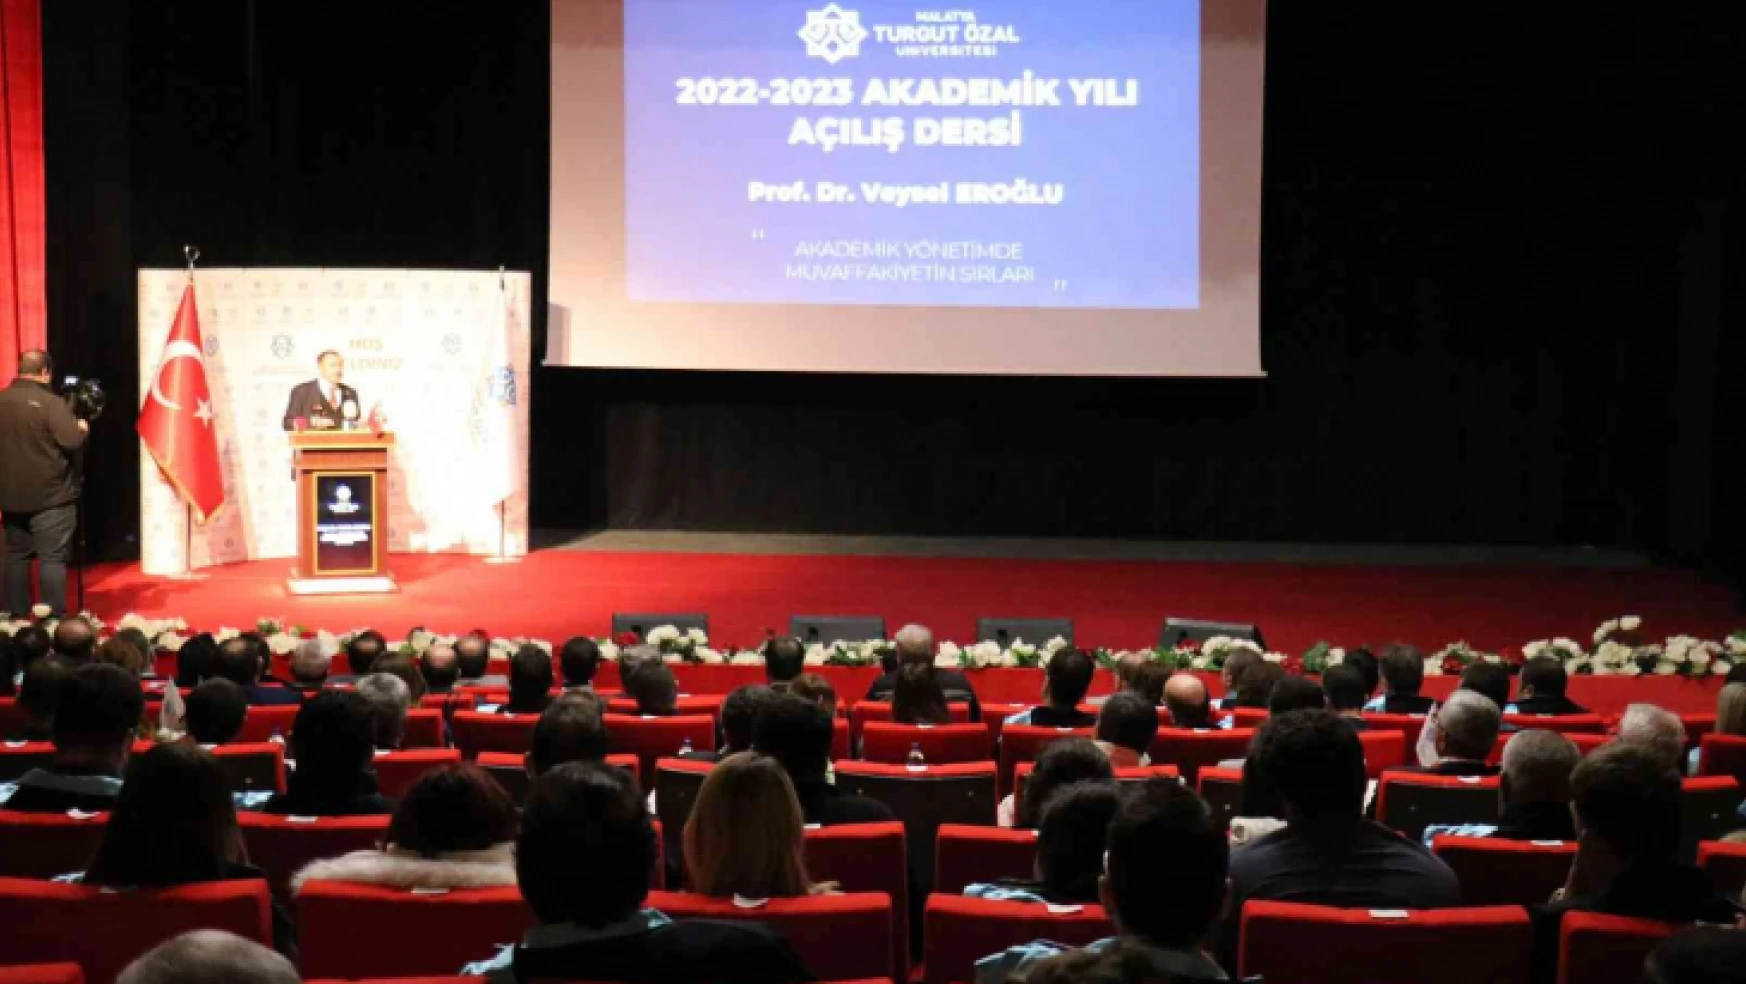 Turgut Özal Üniversitesi'nin 2022-2023 akademik yılı açılışı